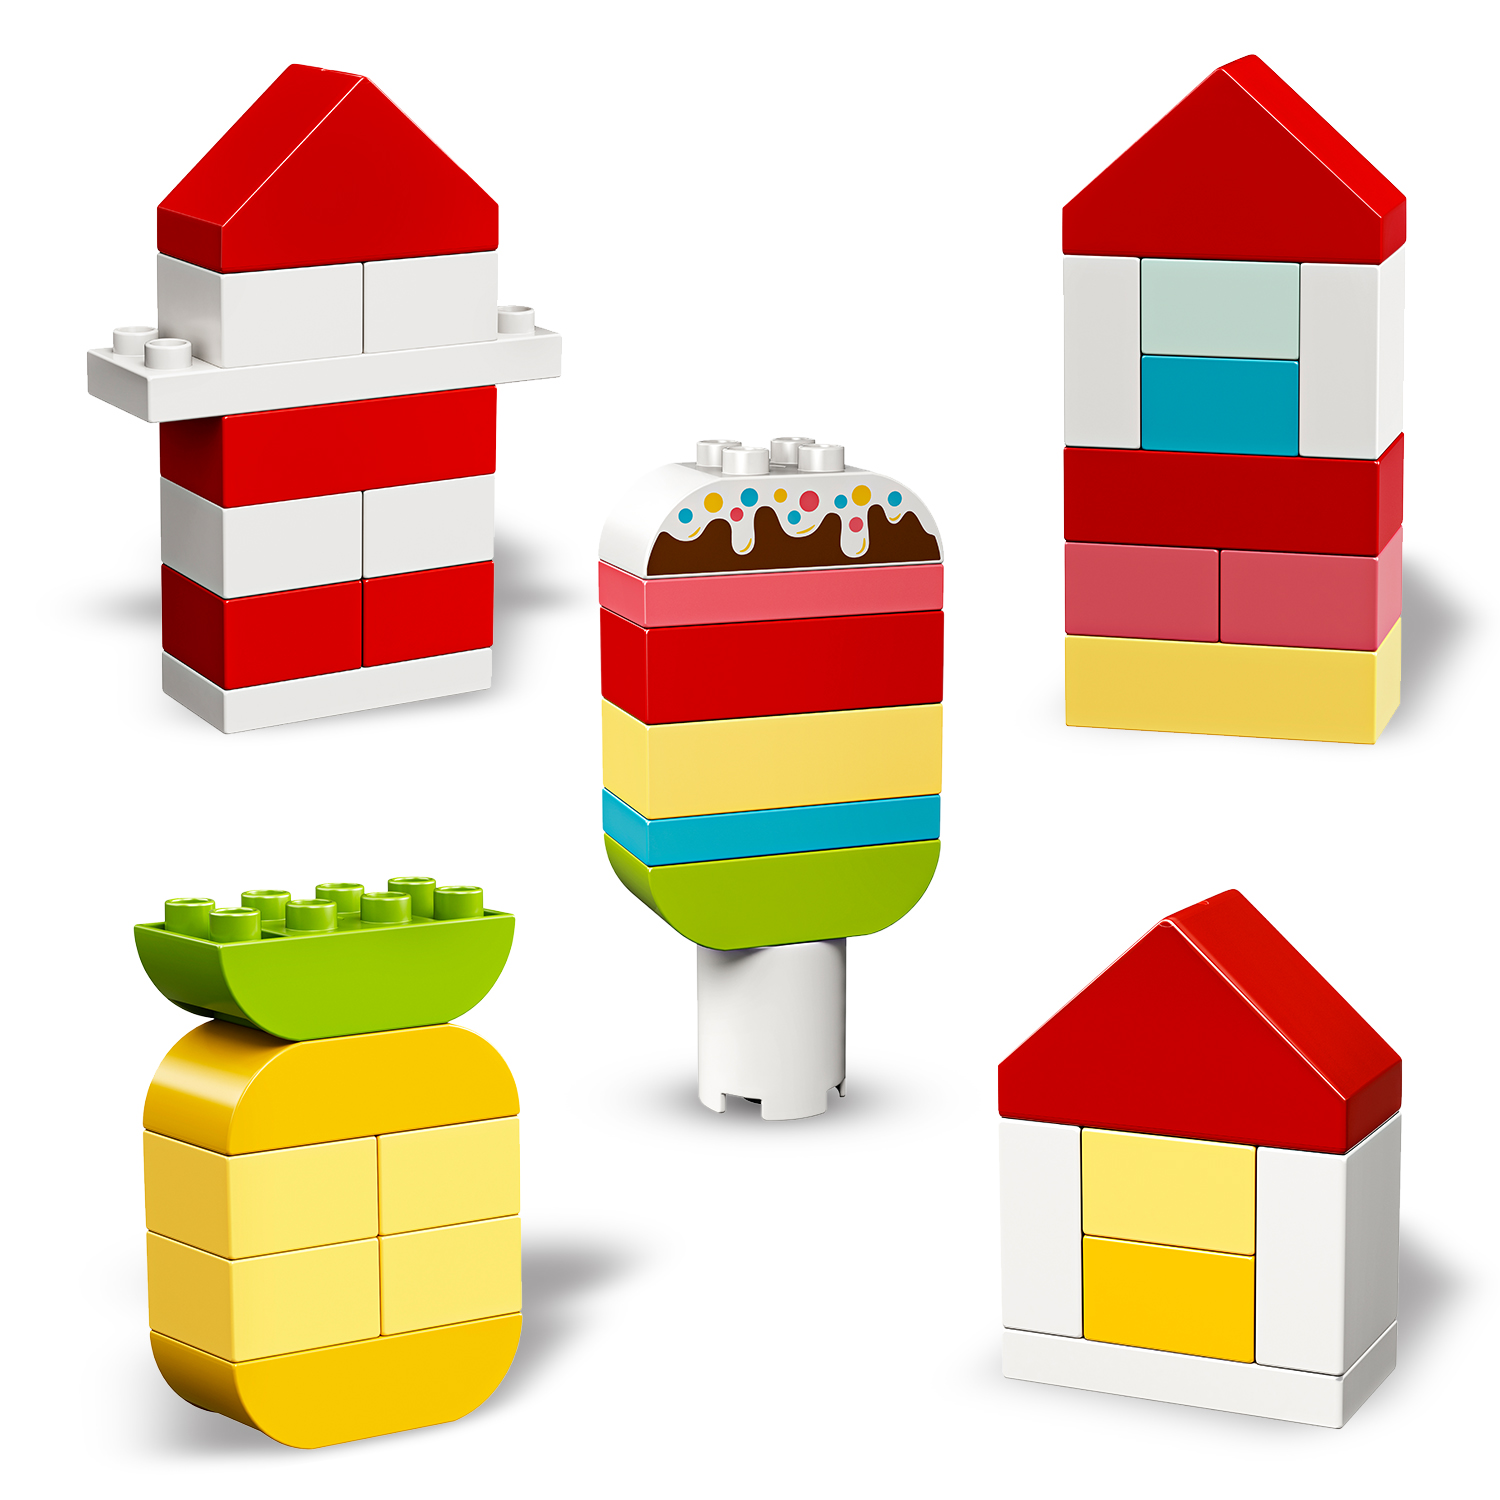 LEGO DUPLO erster Mein 10909 Bausatz, Bauspaß Mehrfarbig